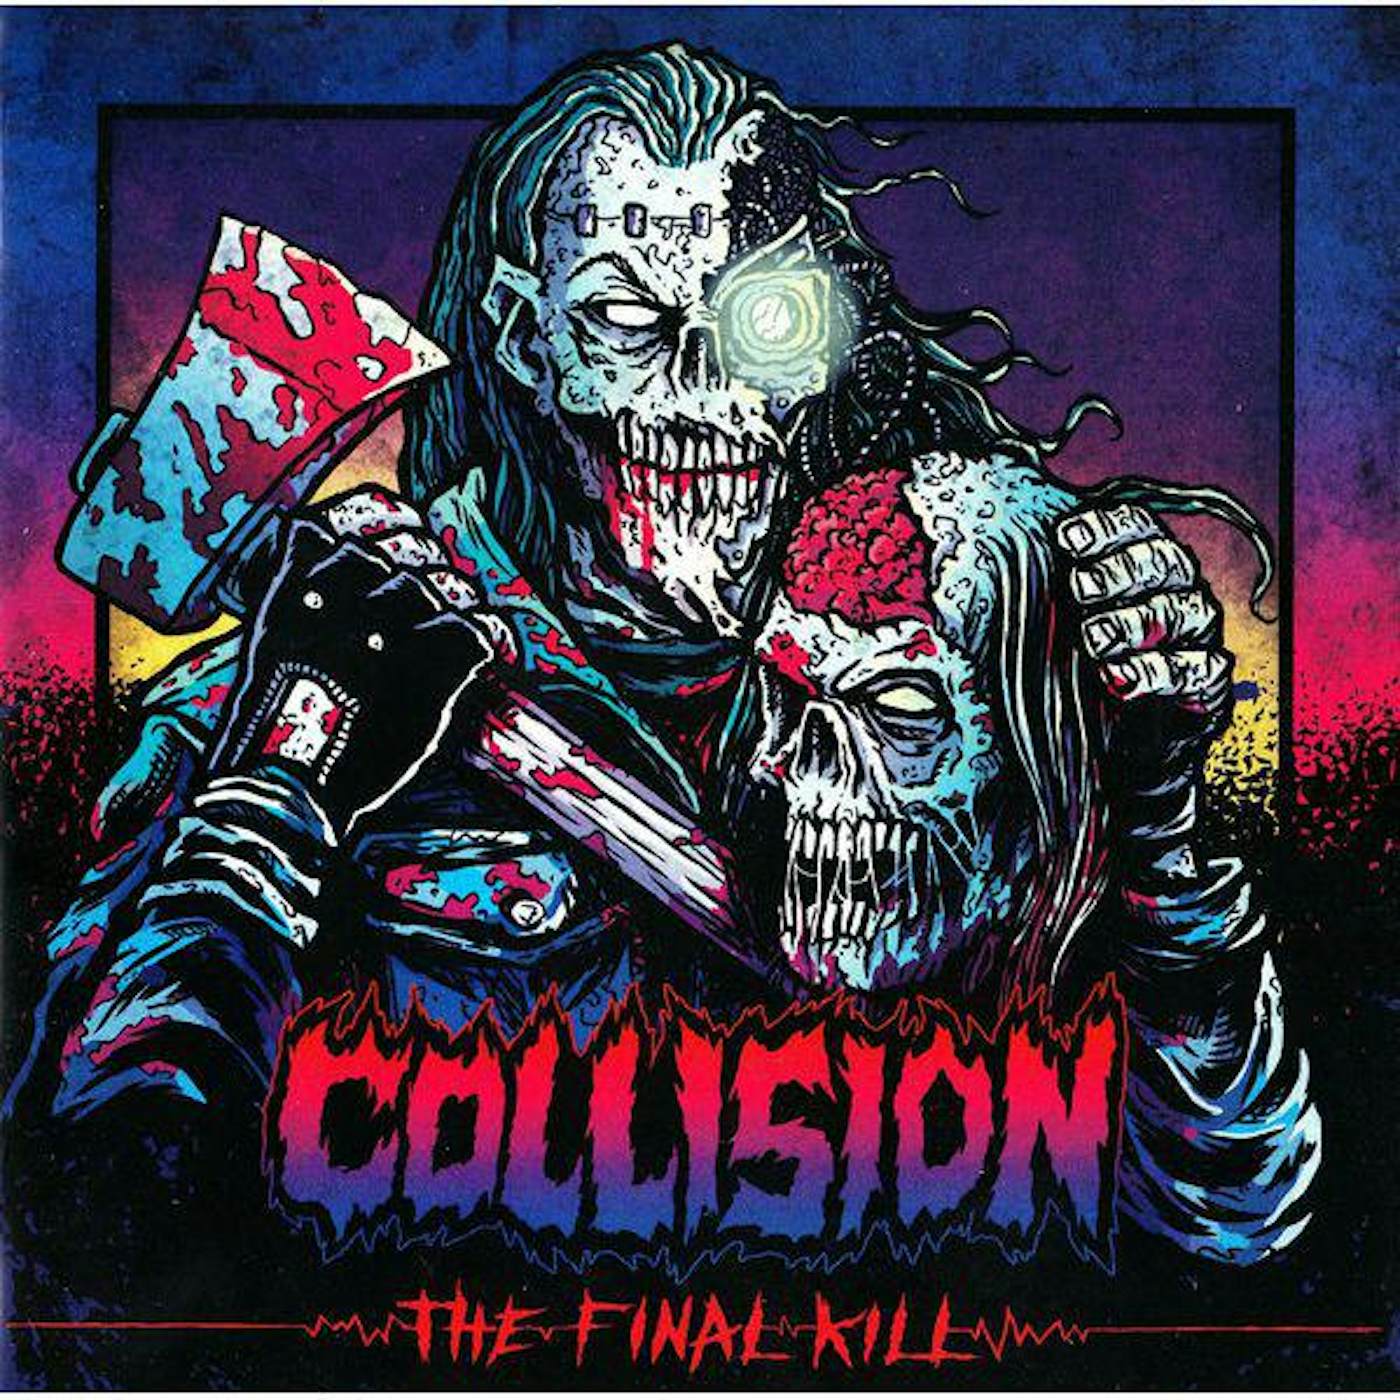 The Collision FINAL KILL Vinyl Record